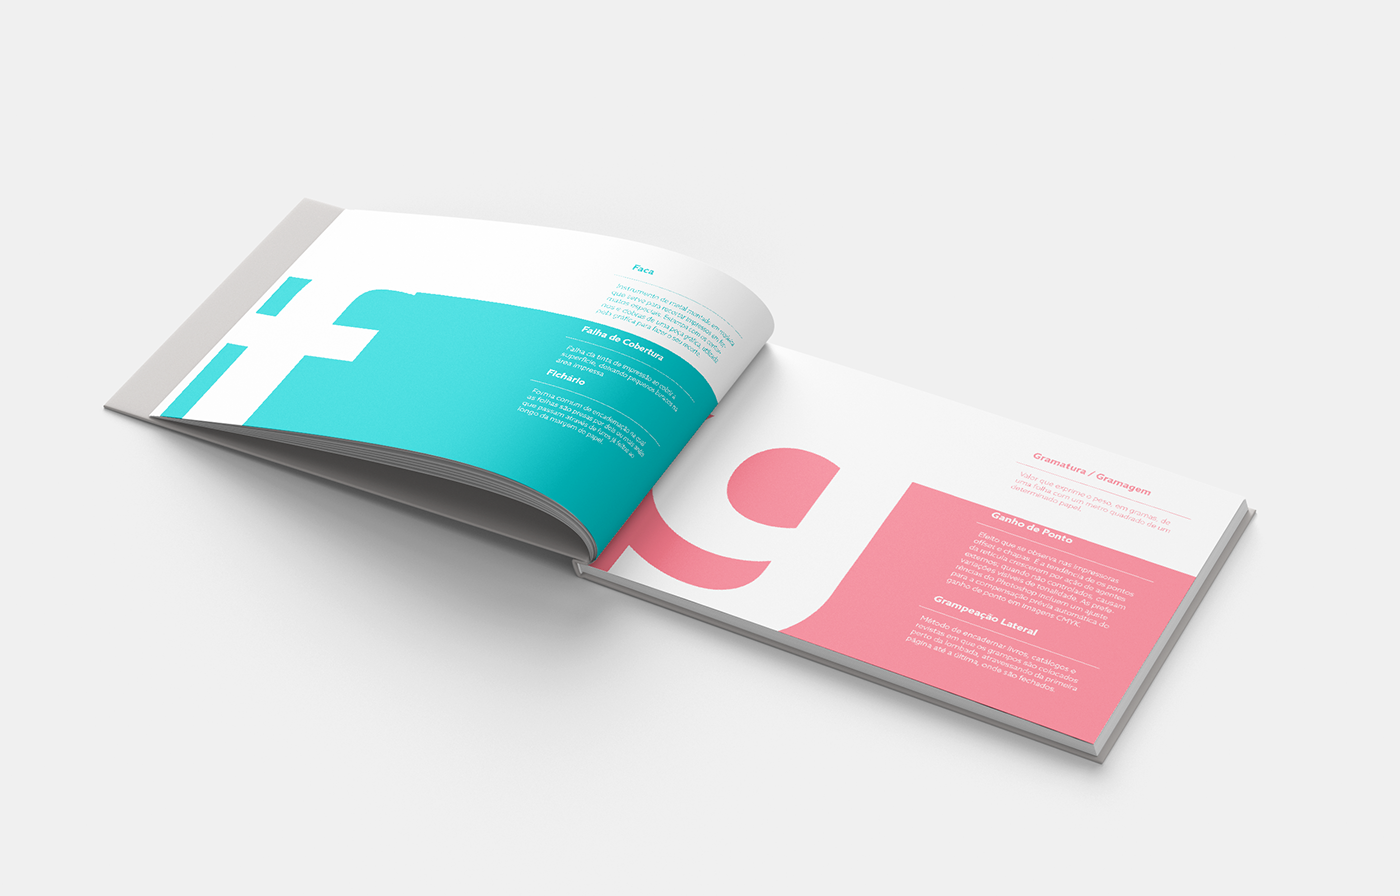 editorial design editorial book produção gráfica agenda glossário design designer graphic production